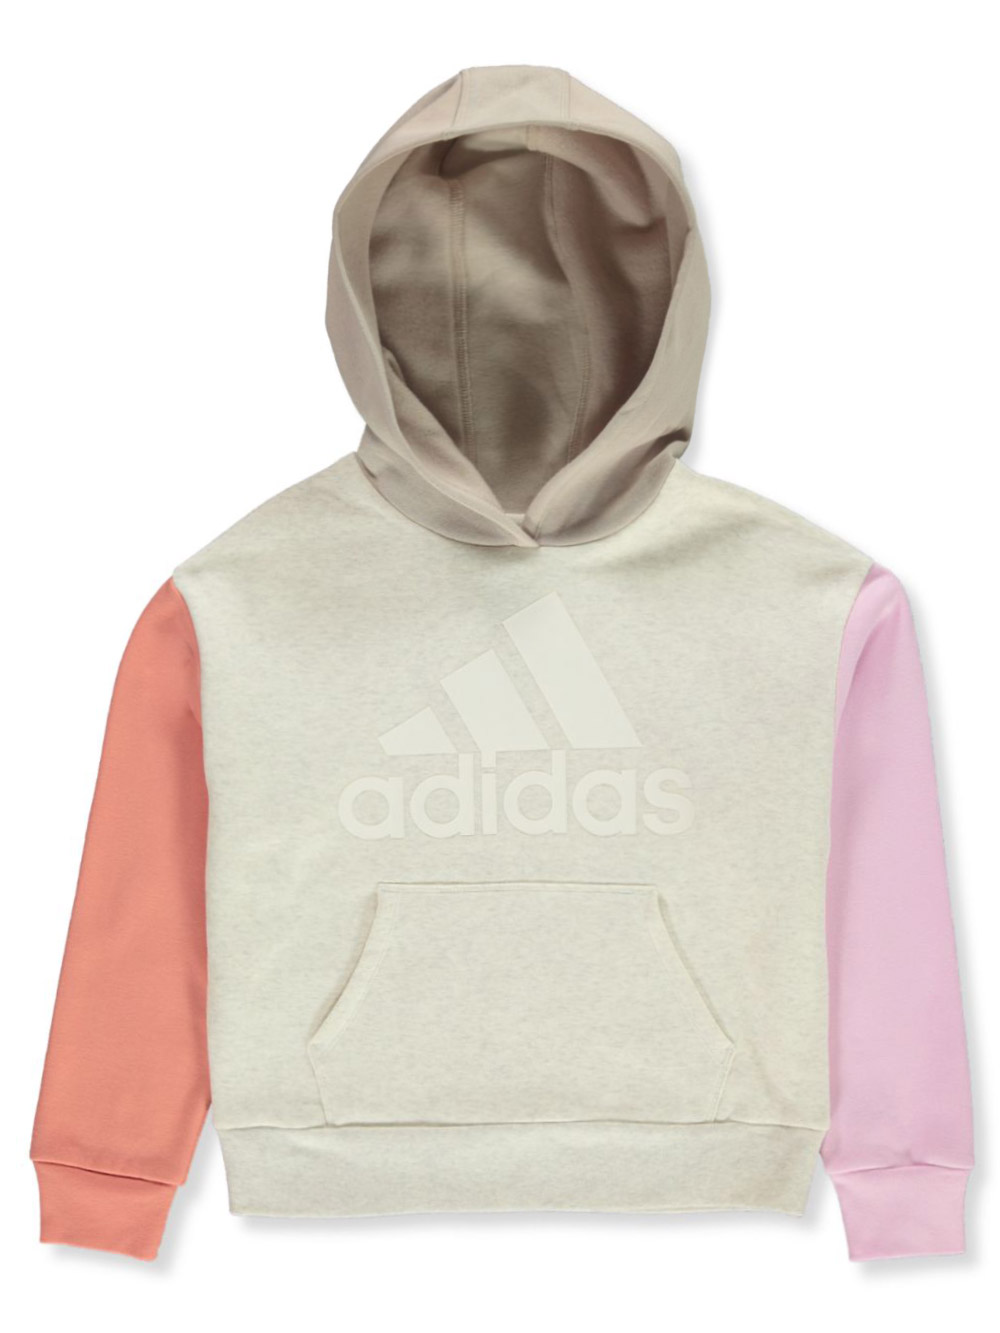 Adidas Girls' Colorblock Hoodie